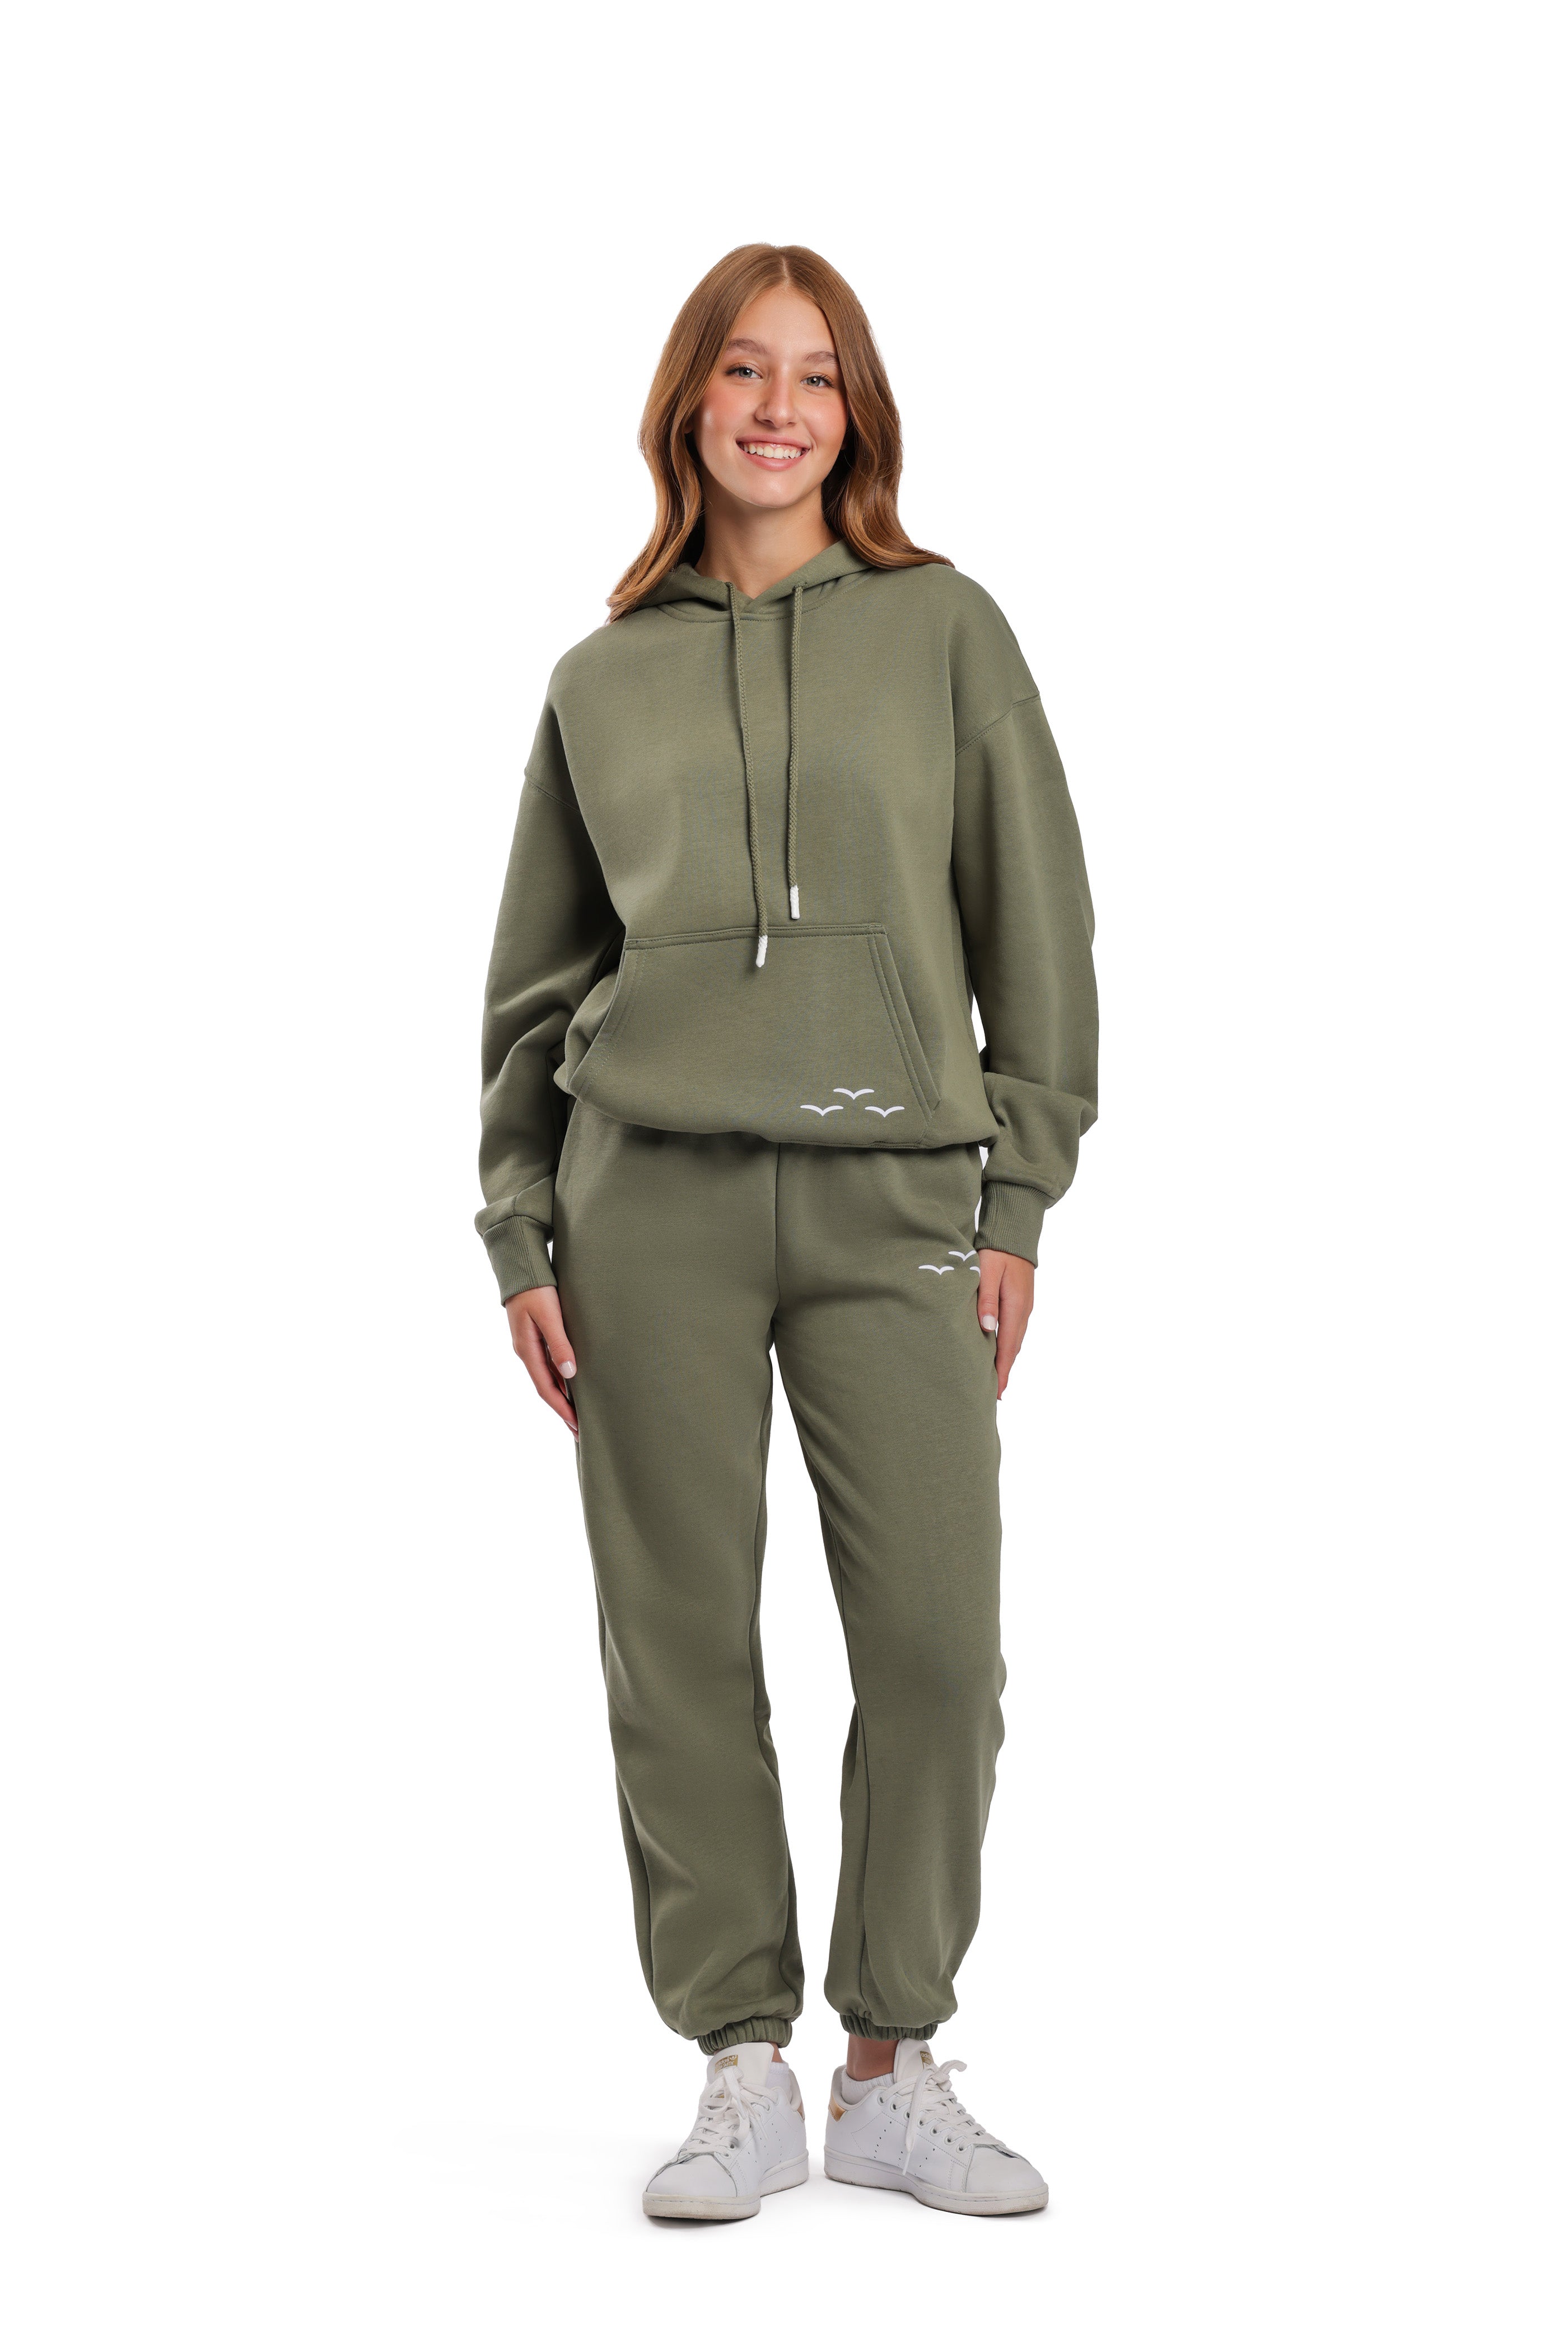 Women’s premium fleece relaxed sweatsuit set in Olive